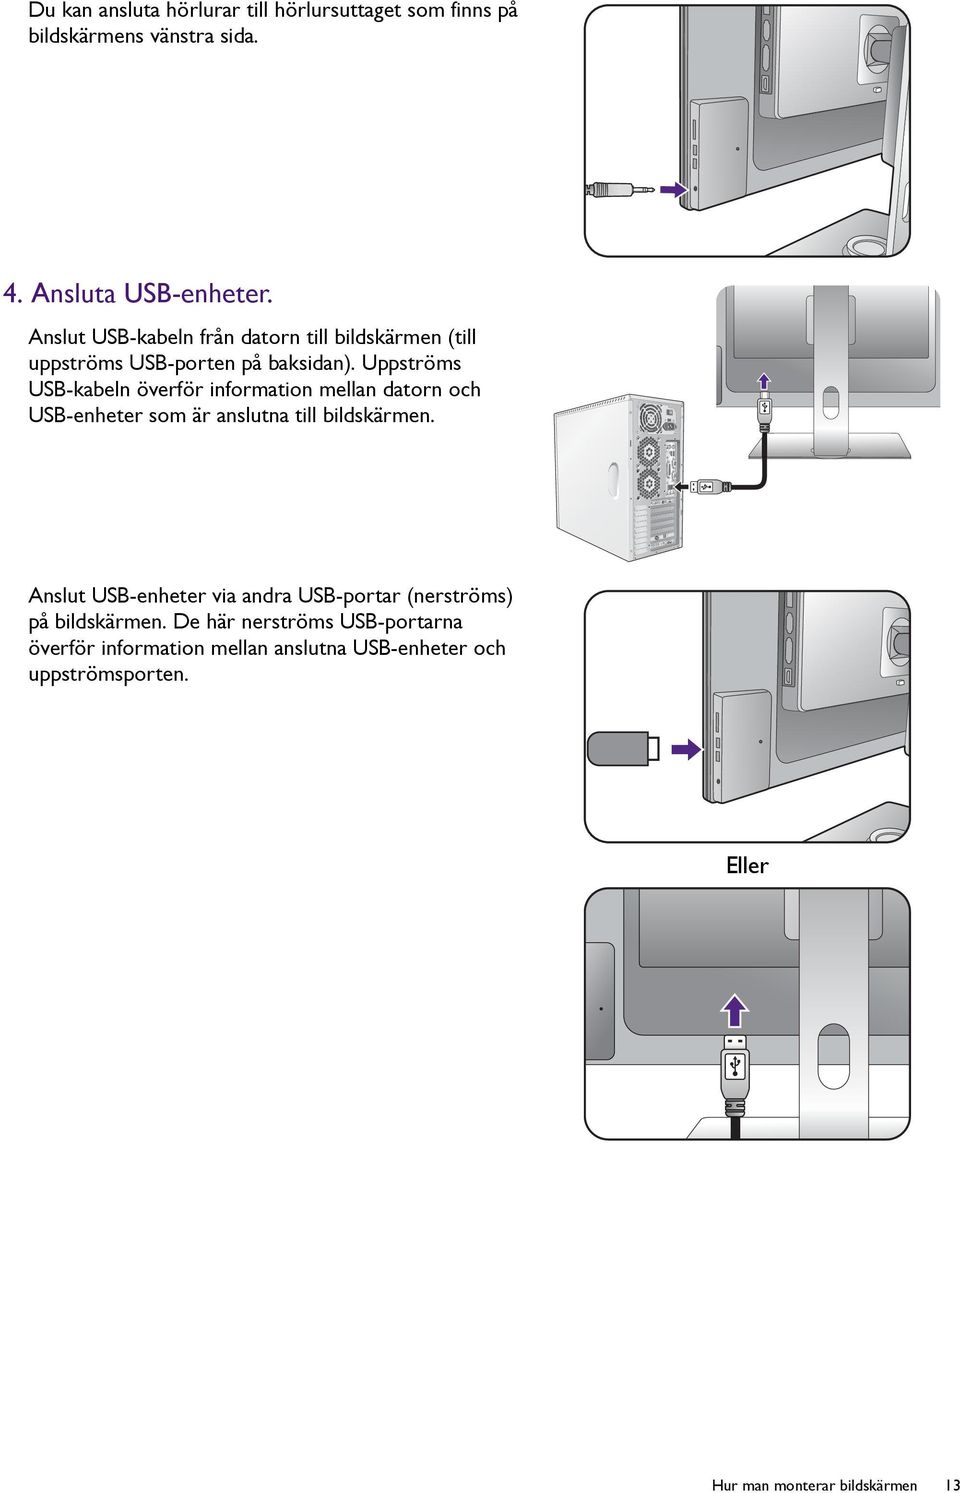 Uppströms USB-kabeln överför information mellan datorn och USB-enheter som är anslutna till bildskärmen.